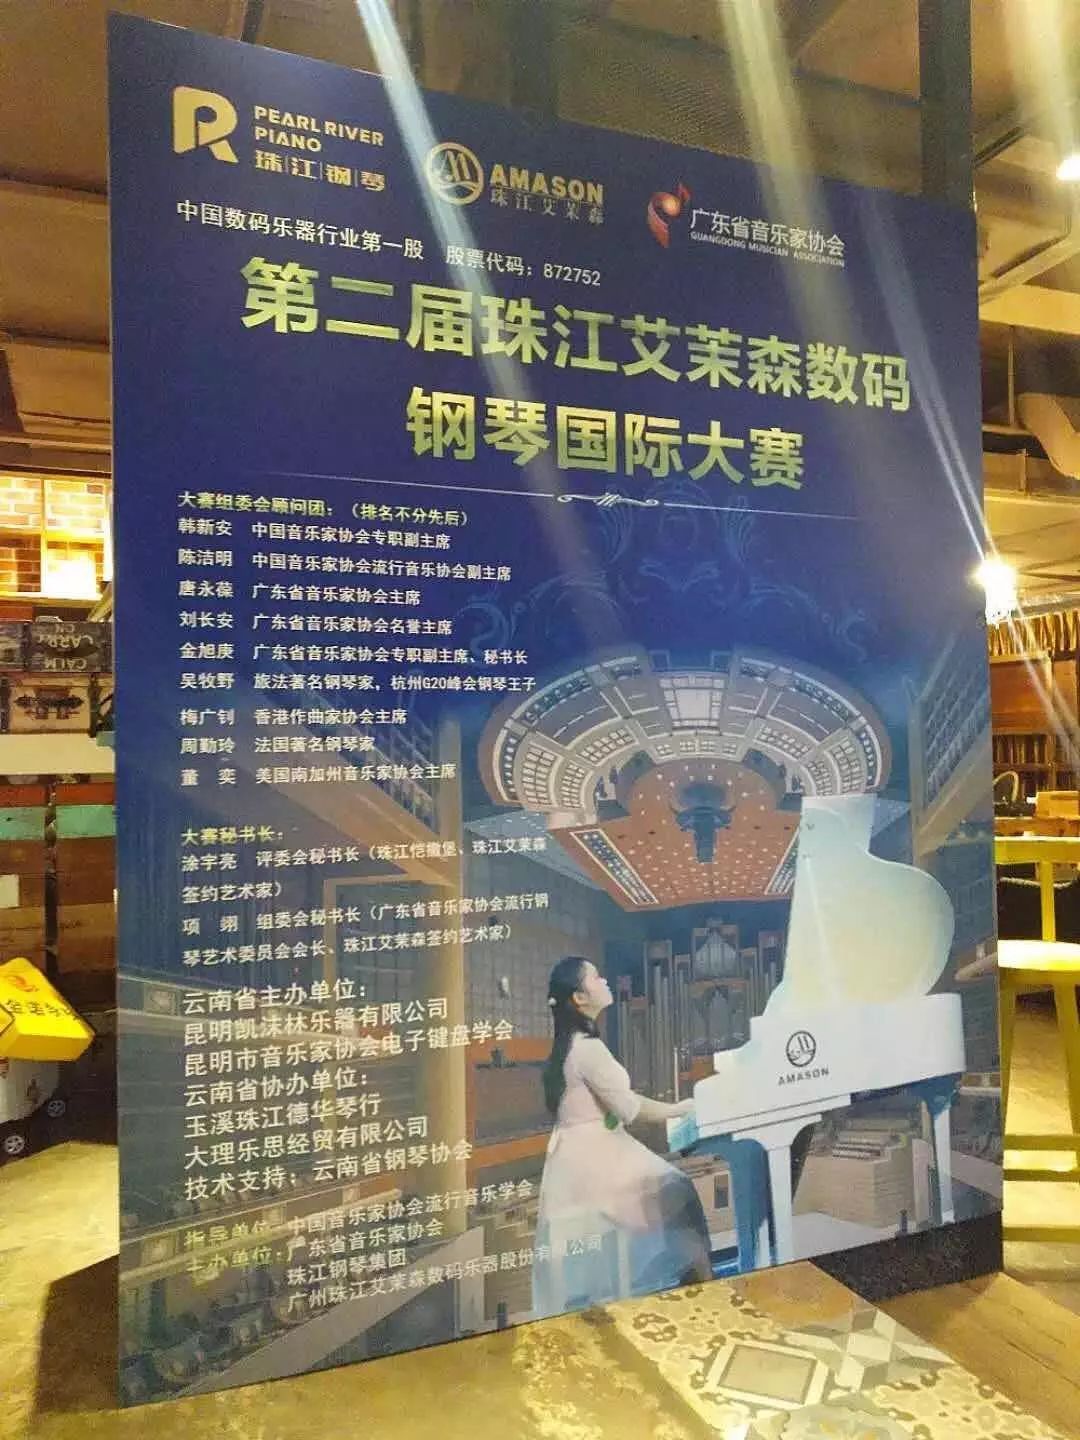 熱烈祝賀第二屆珠江艾茉森數碼鋼琴國(guó)際大賽雲南、海南賽區圓滿落